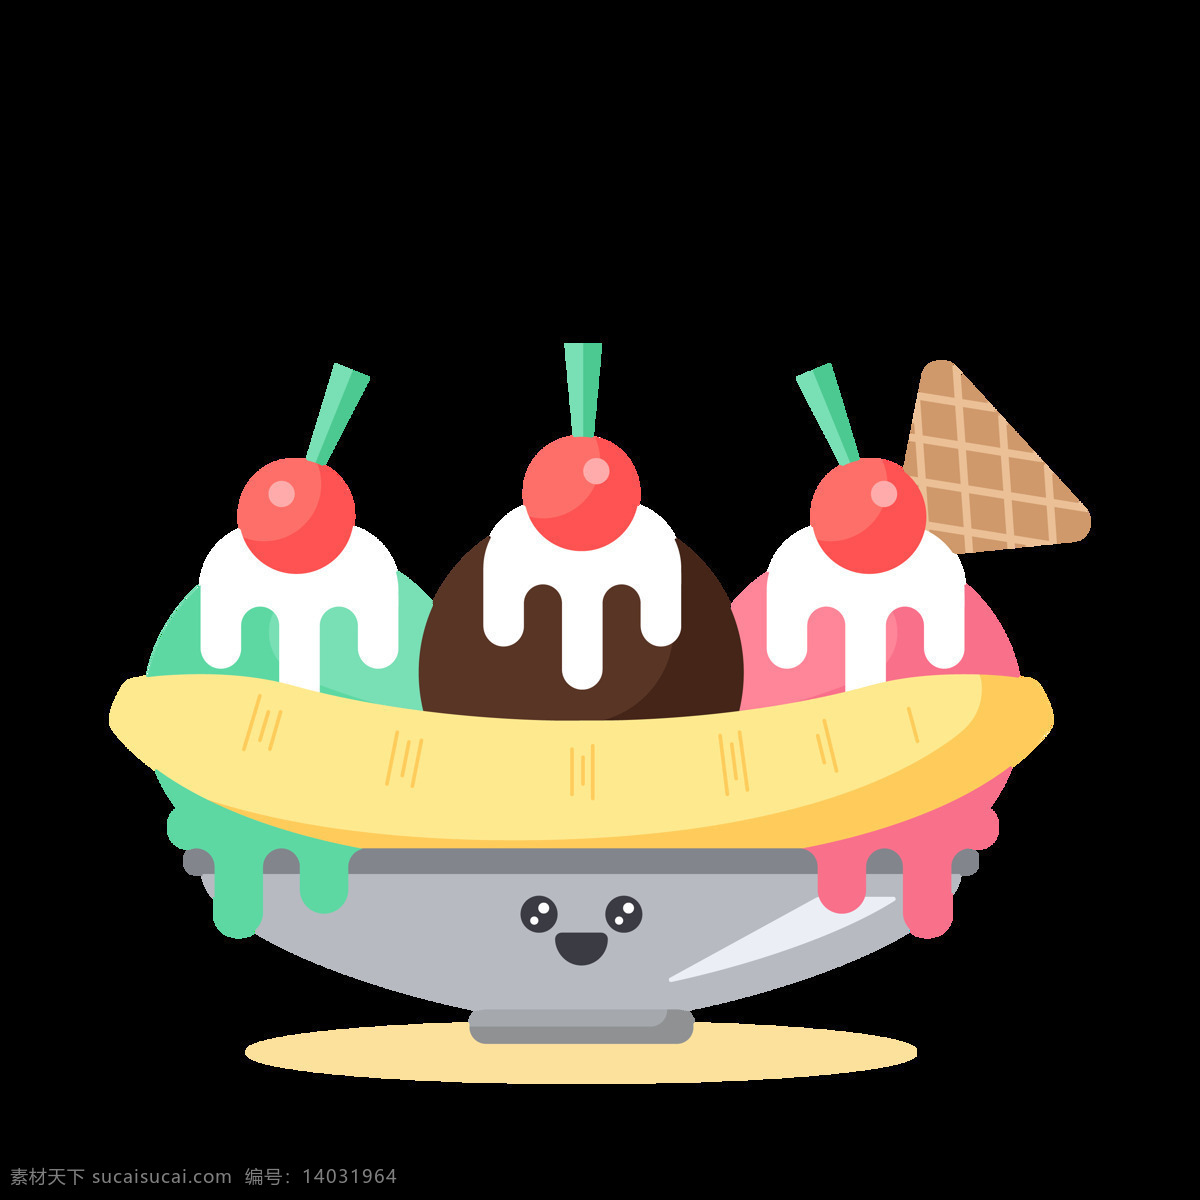 彩色 可爱 冰淇淋 免 抠 透明 图 层 甜品图标 冷饮插图 清凉甜品 冰淇淋标志 雪糕图标 冰激凌图标 冰激凌插图 卡通冰淇淋 手绘冰淇淋 雪糕图案 冰淇淋促销 冰淇淋素材